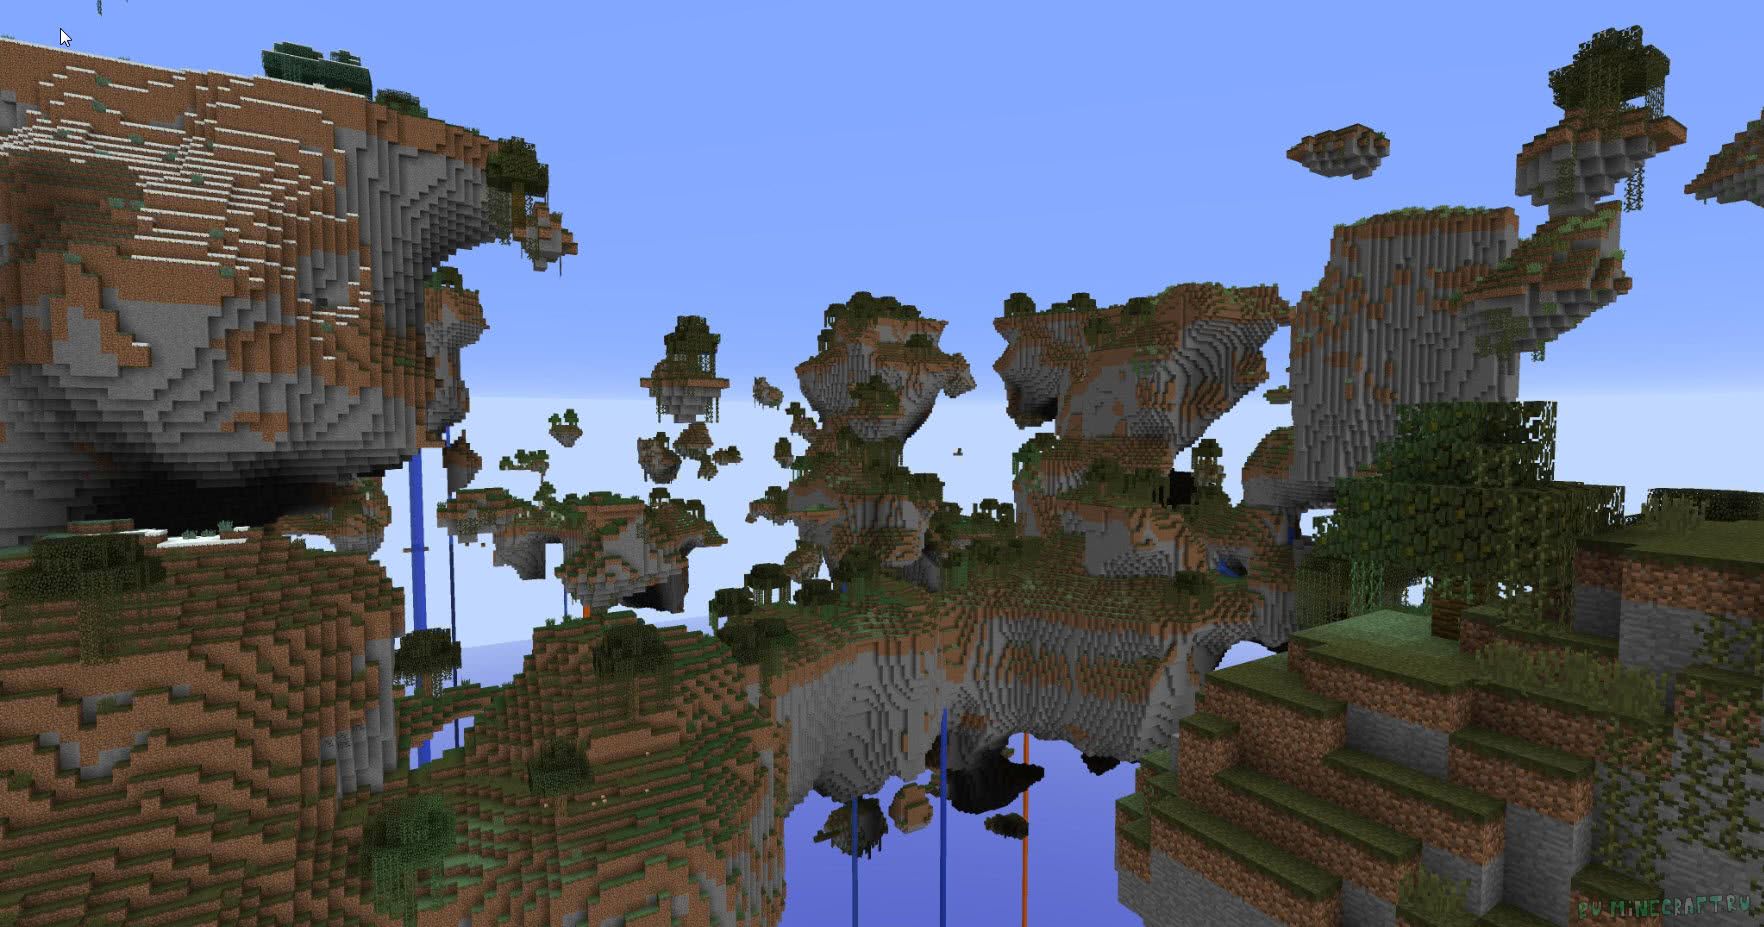 Openterraingenerator. Minecraft. Остров в небе майнкрафт. Мод на генерацию летающих островов.